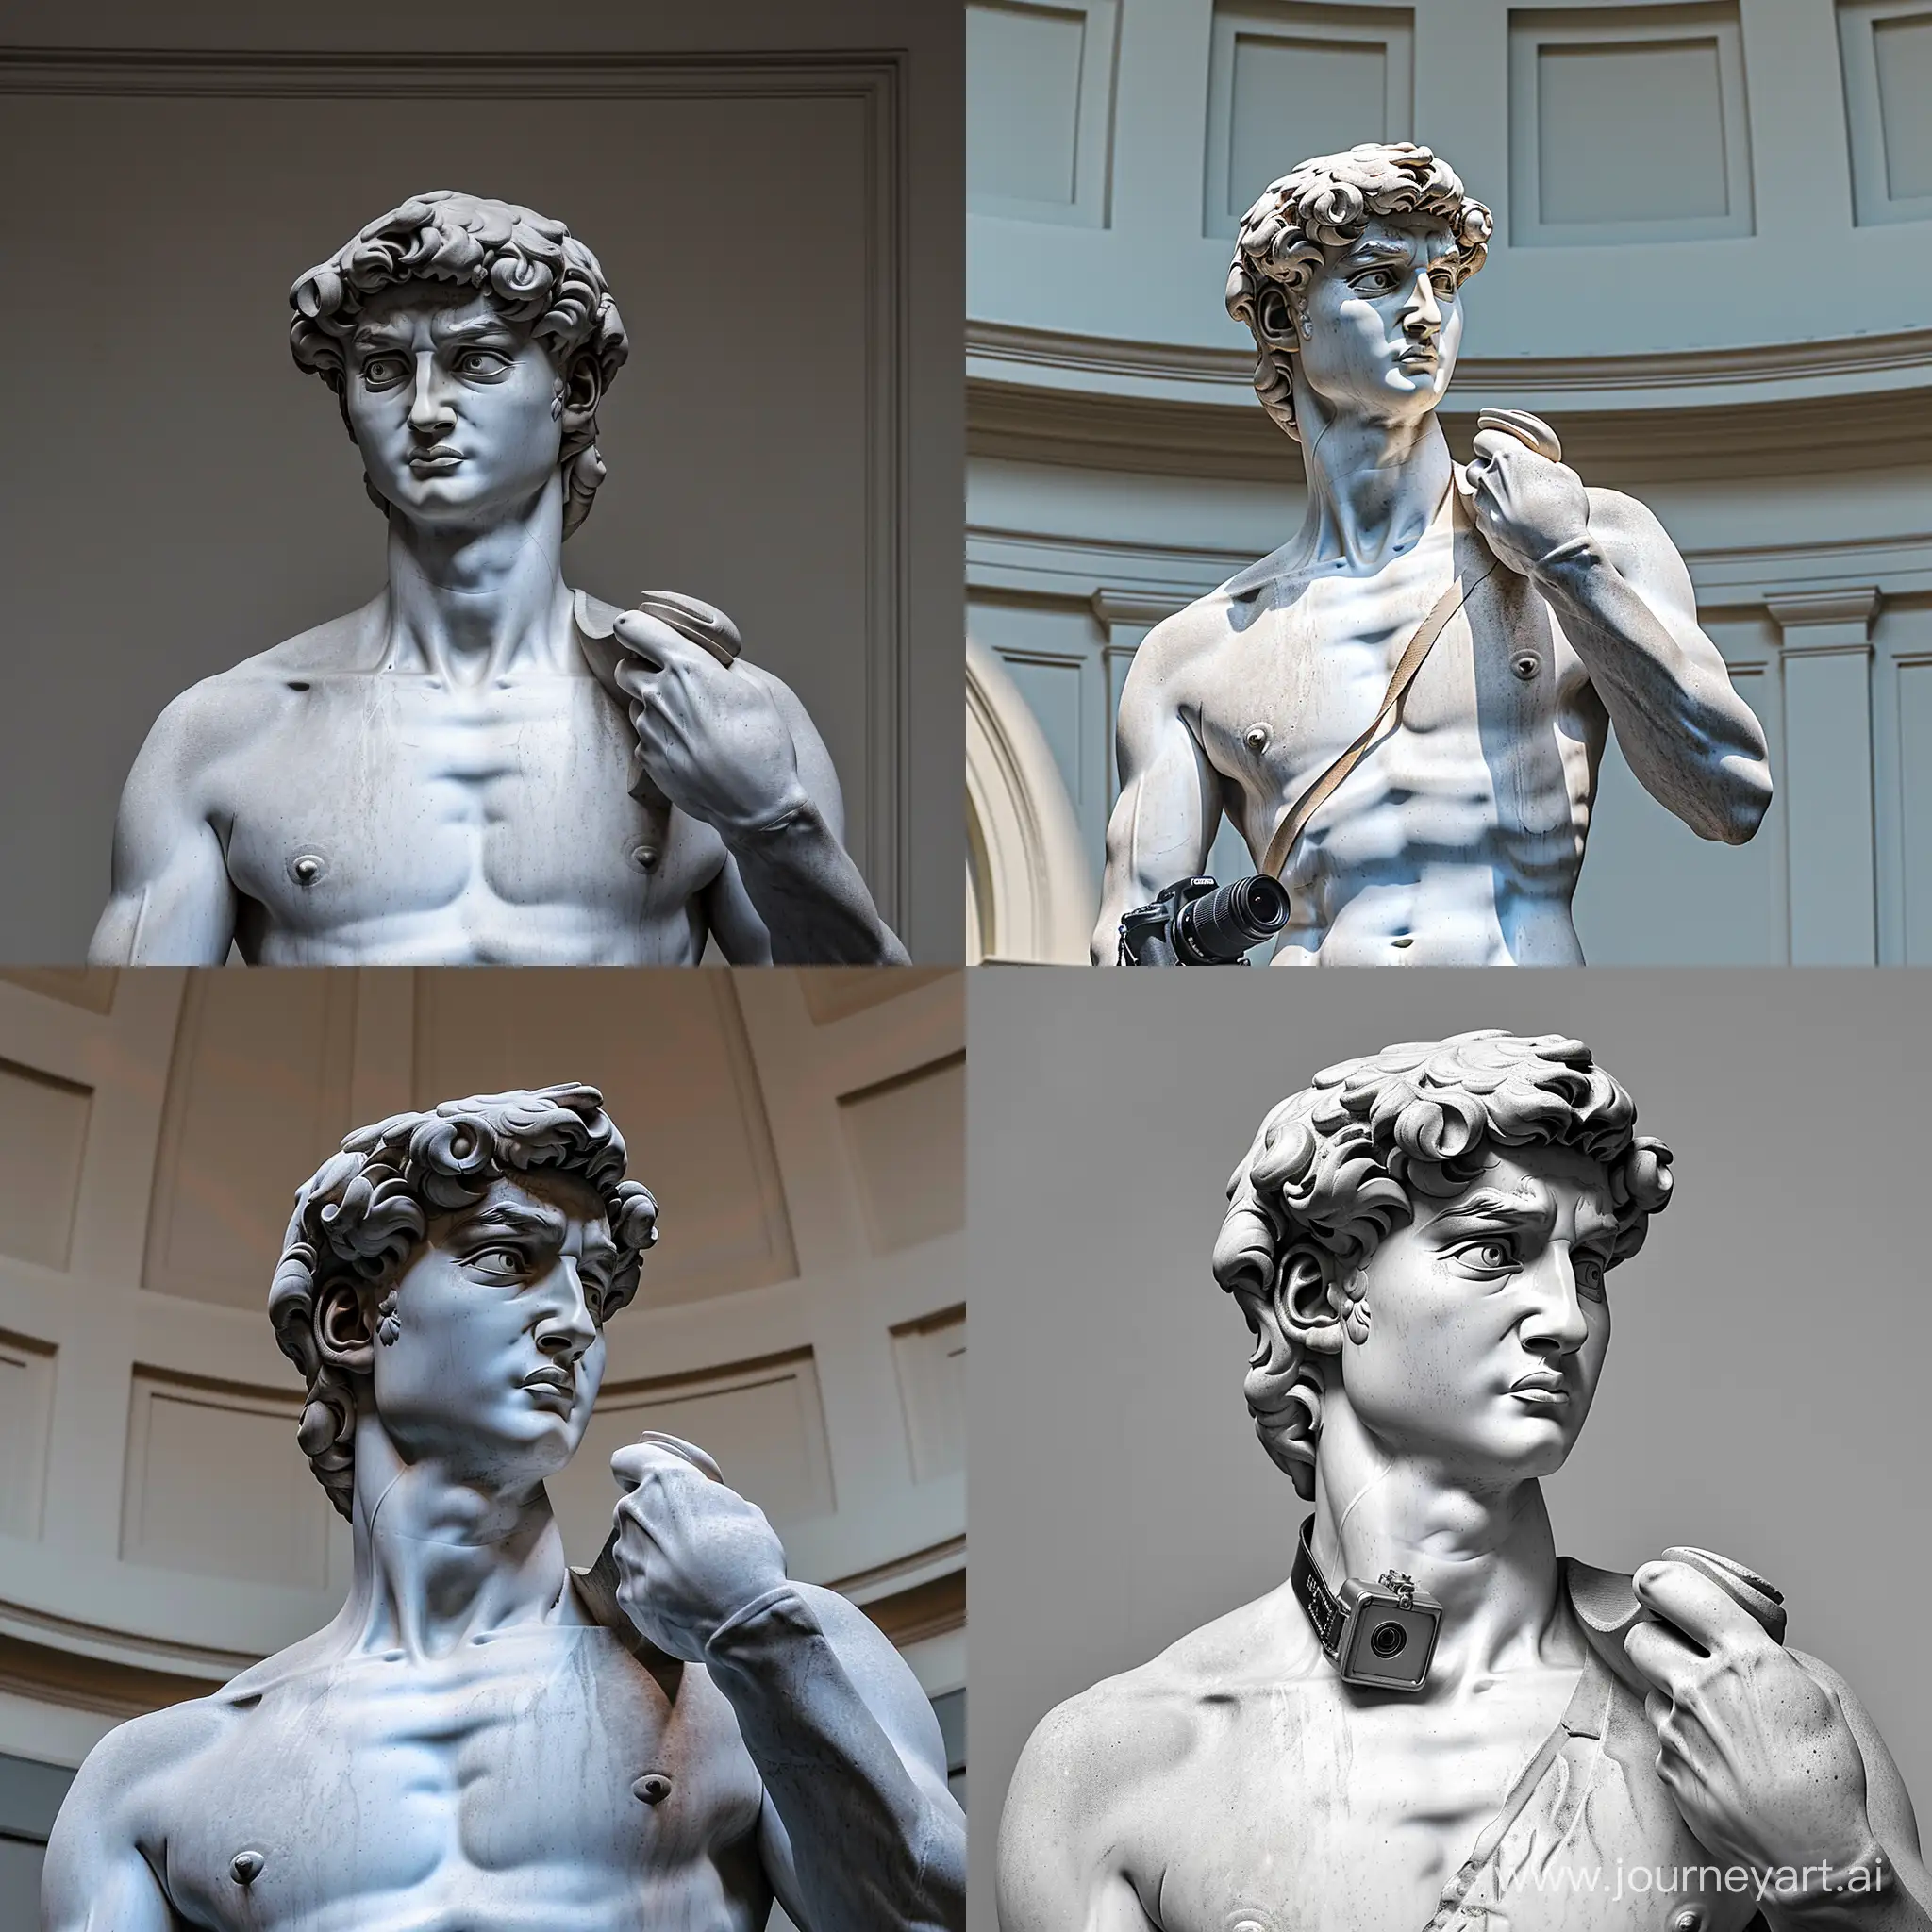 Statue-of-David-with-a-Camera-Renaissance-Art-Meets-Modern-Technology